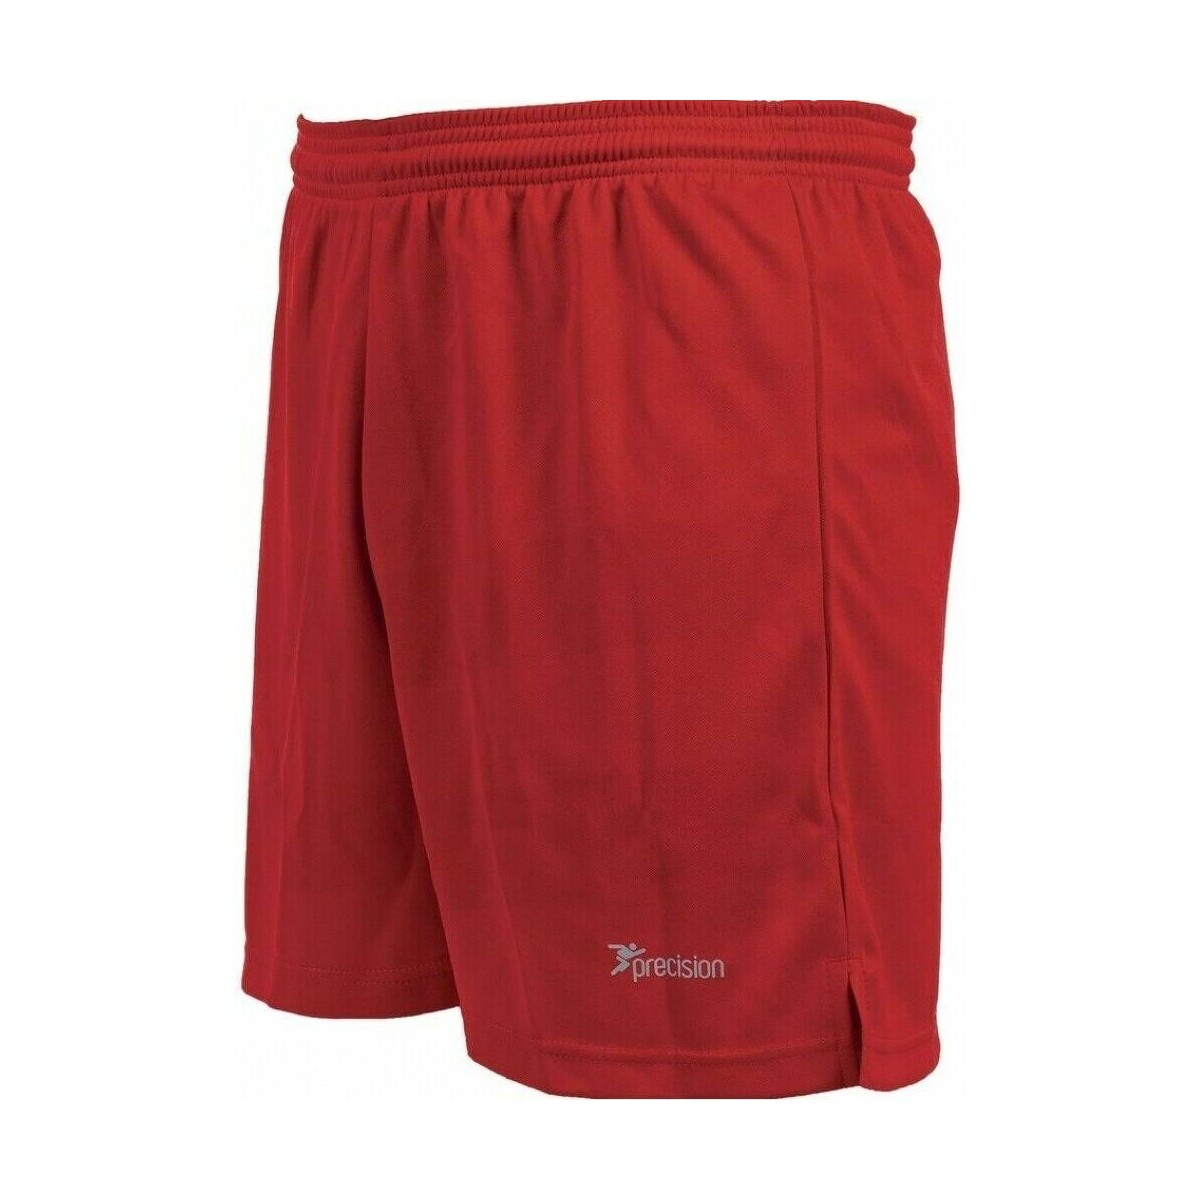 textil Shorts / Bermudas Precision Madrid Rojo